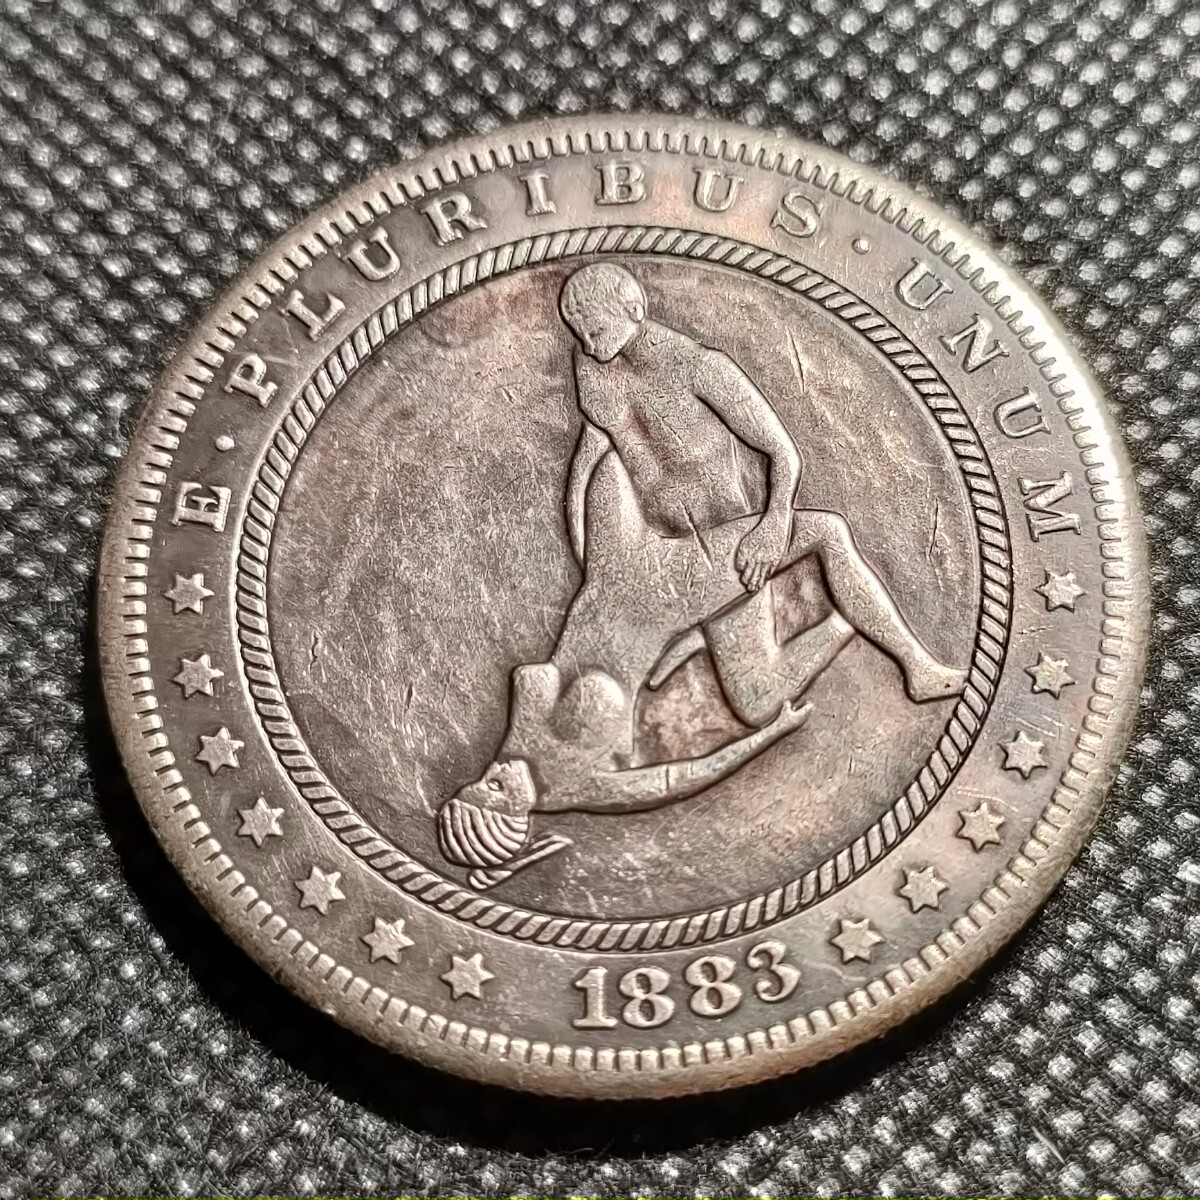 7523 アメリカ古銭 ルンペン 約38mm イーグル チャレンジコイン ゴルフマーカー コイン アンティーク ホーボーの画像1